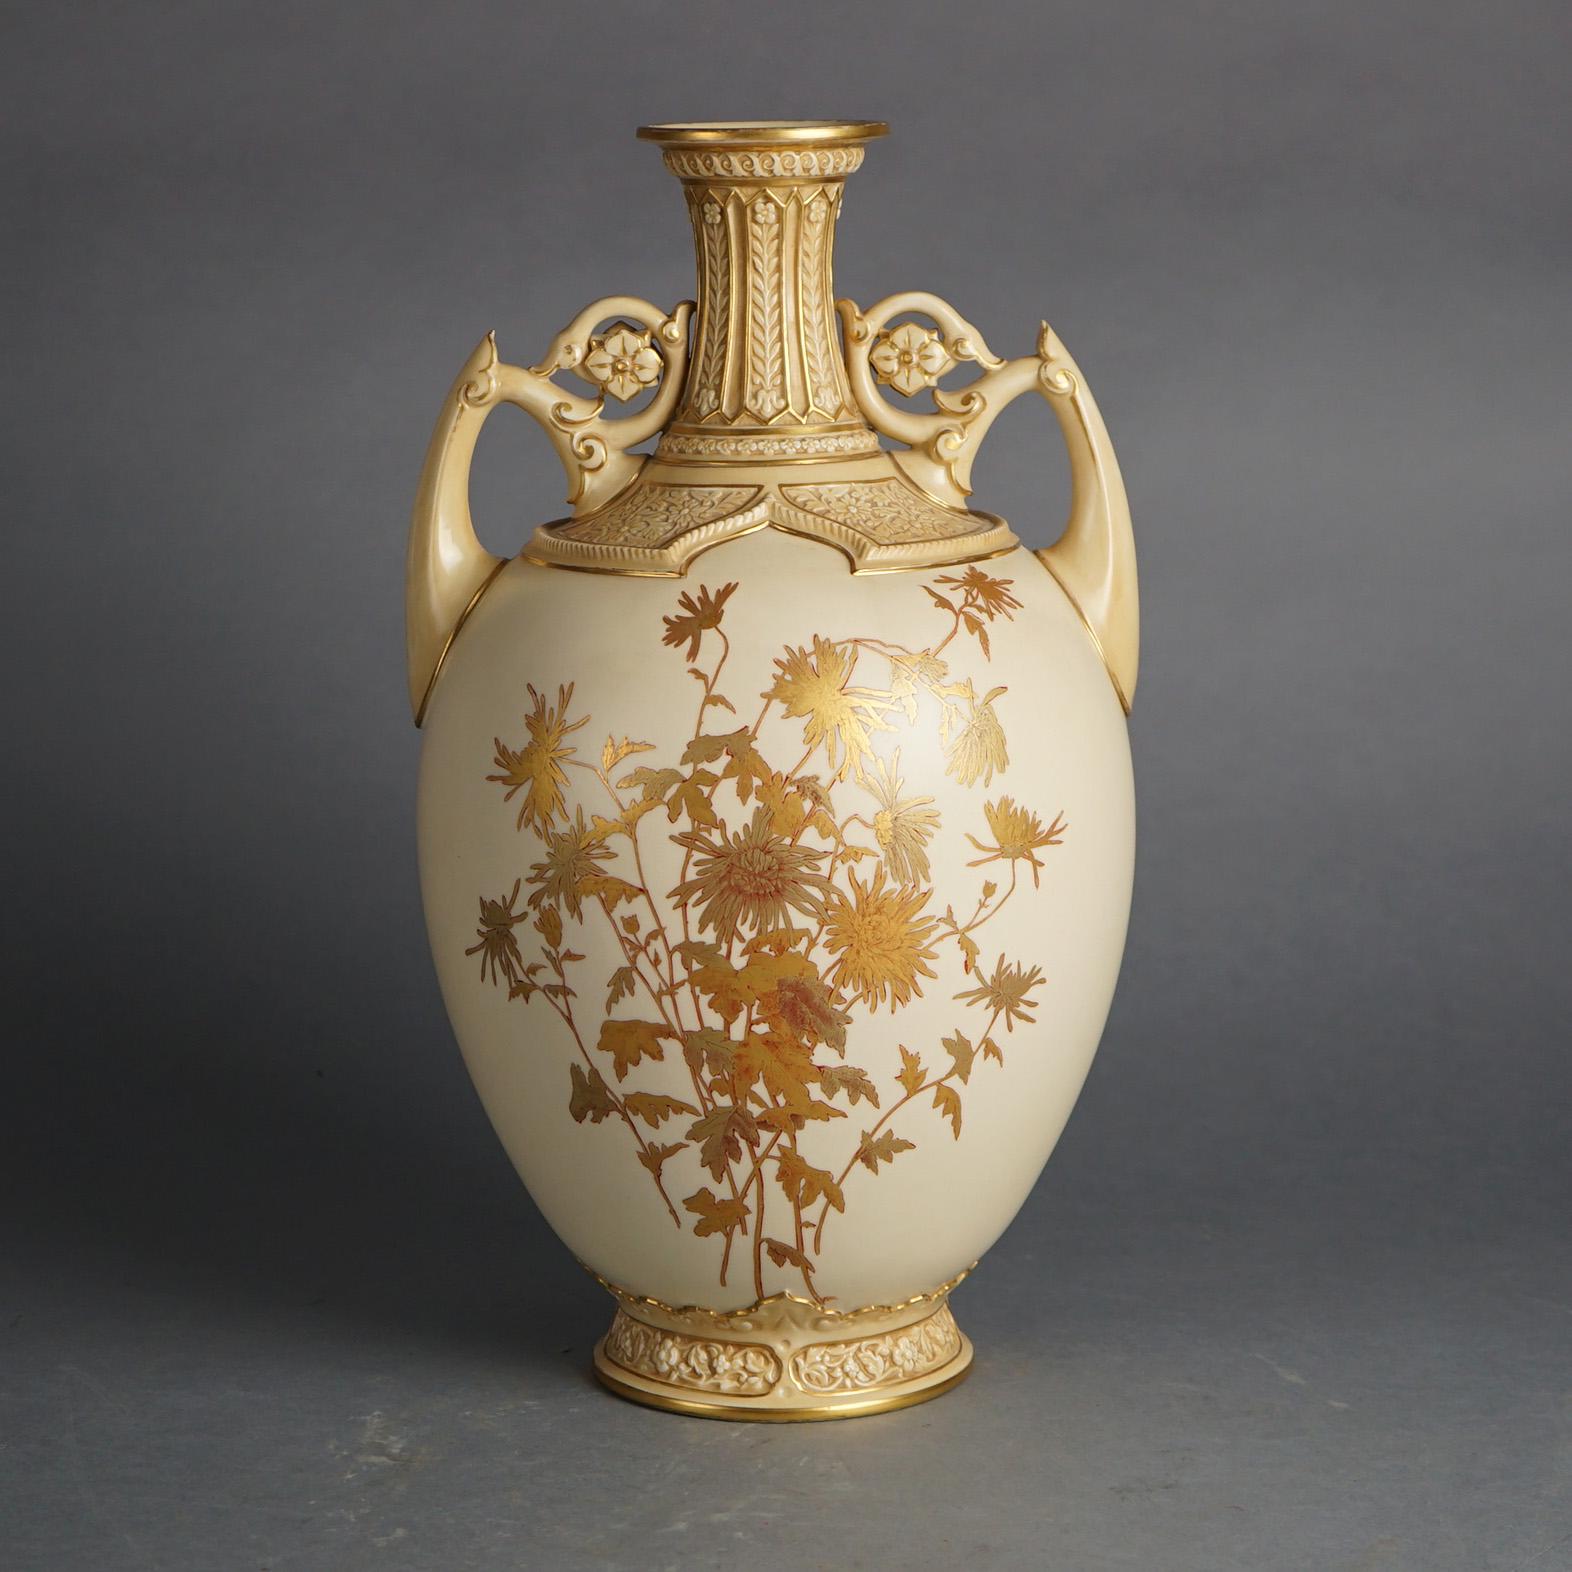 Ancien vase anglais Royal Worcester en porcelaine avec décoration florale dorée et peinte à la main, poignées et rosettes en forme de double feuillage, marque du fabricant sur la base comme photographié, vers 1890.

Mesures - 16 